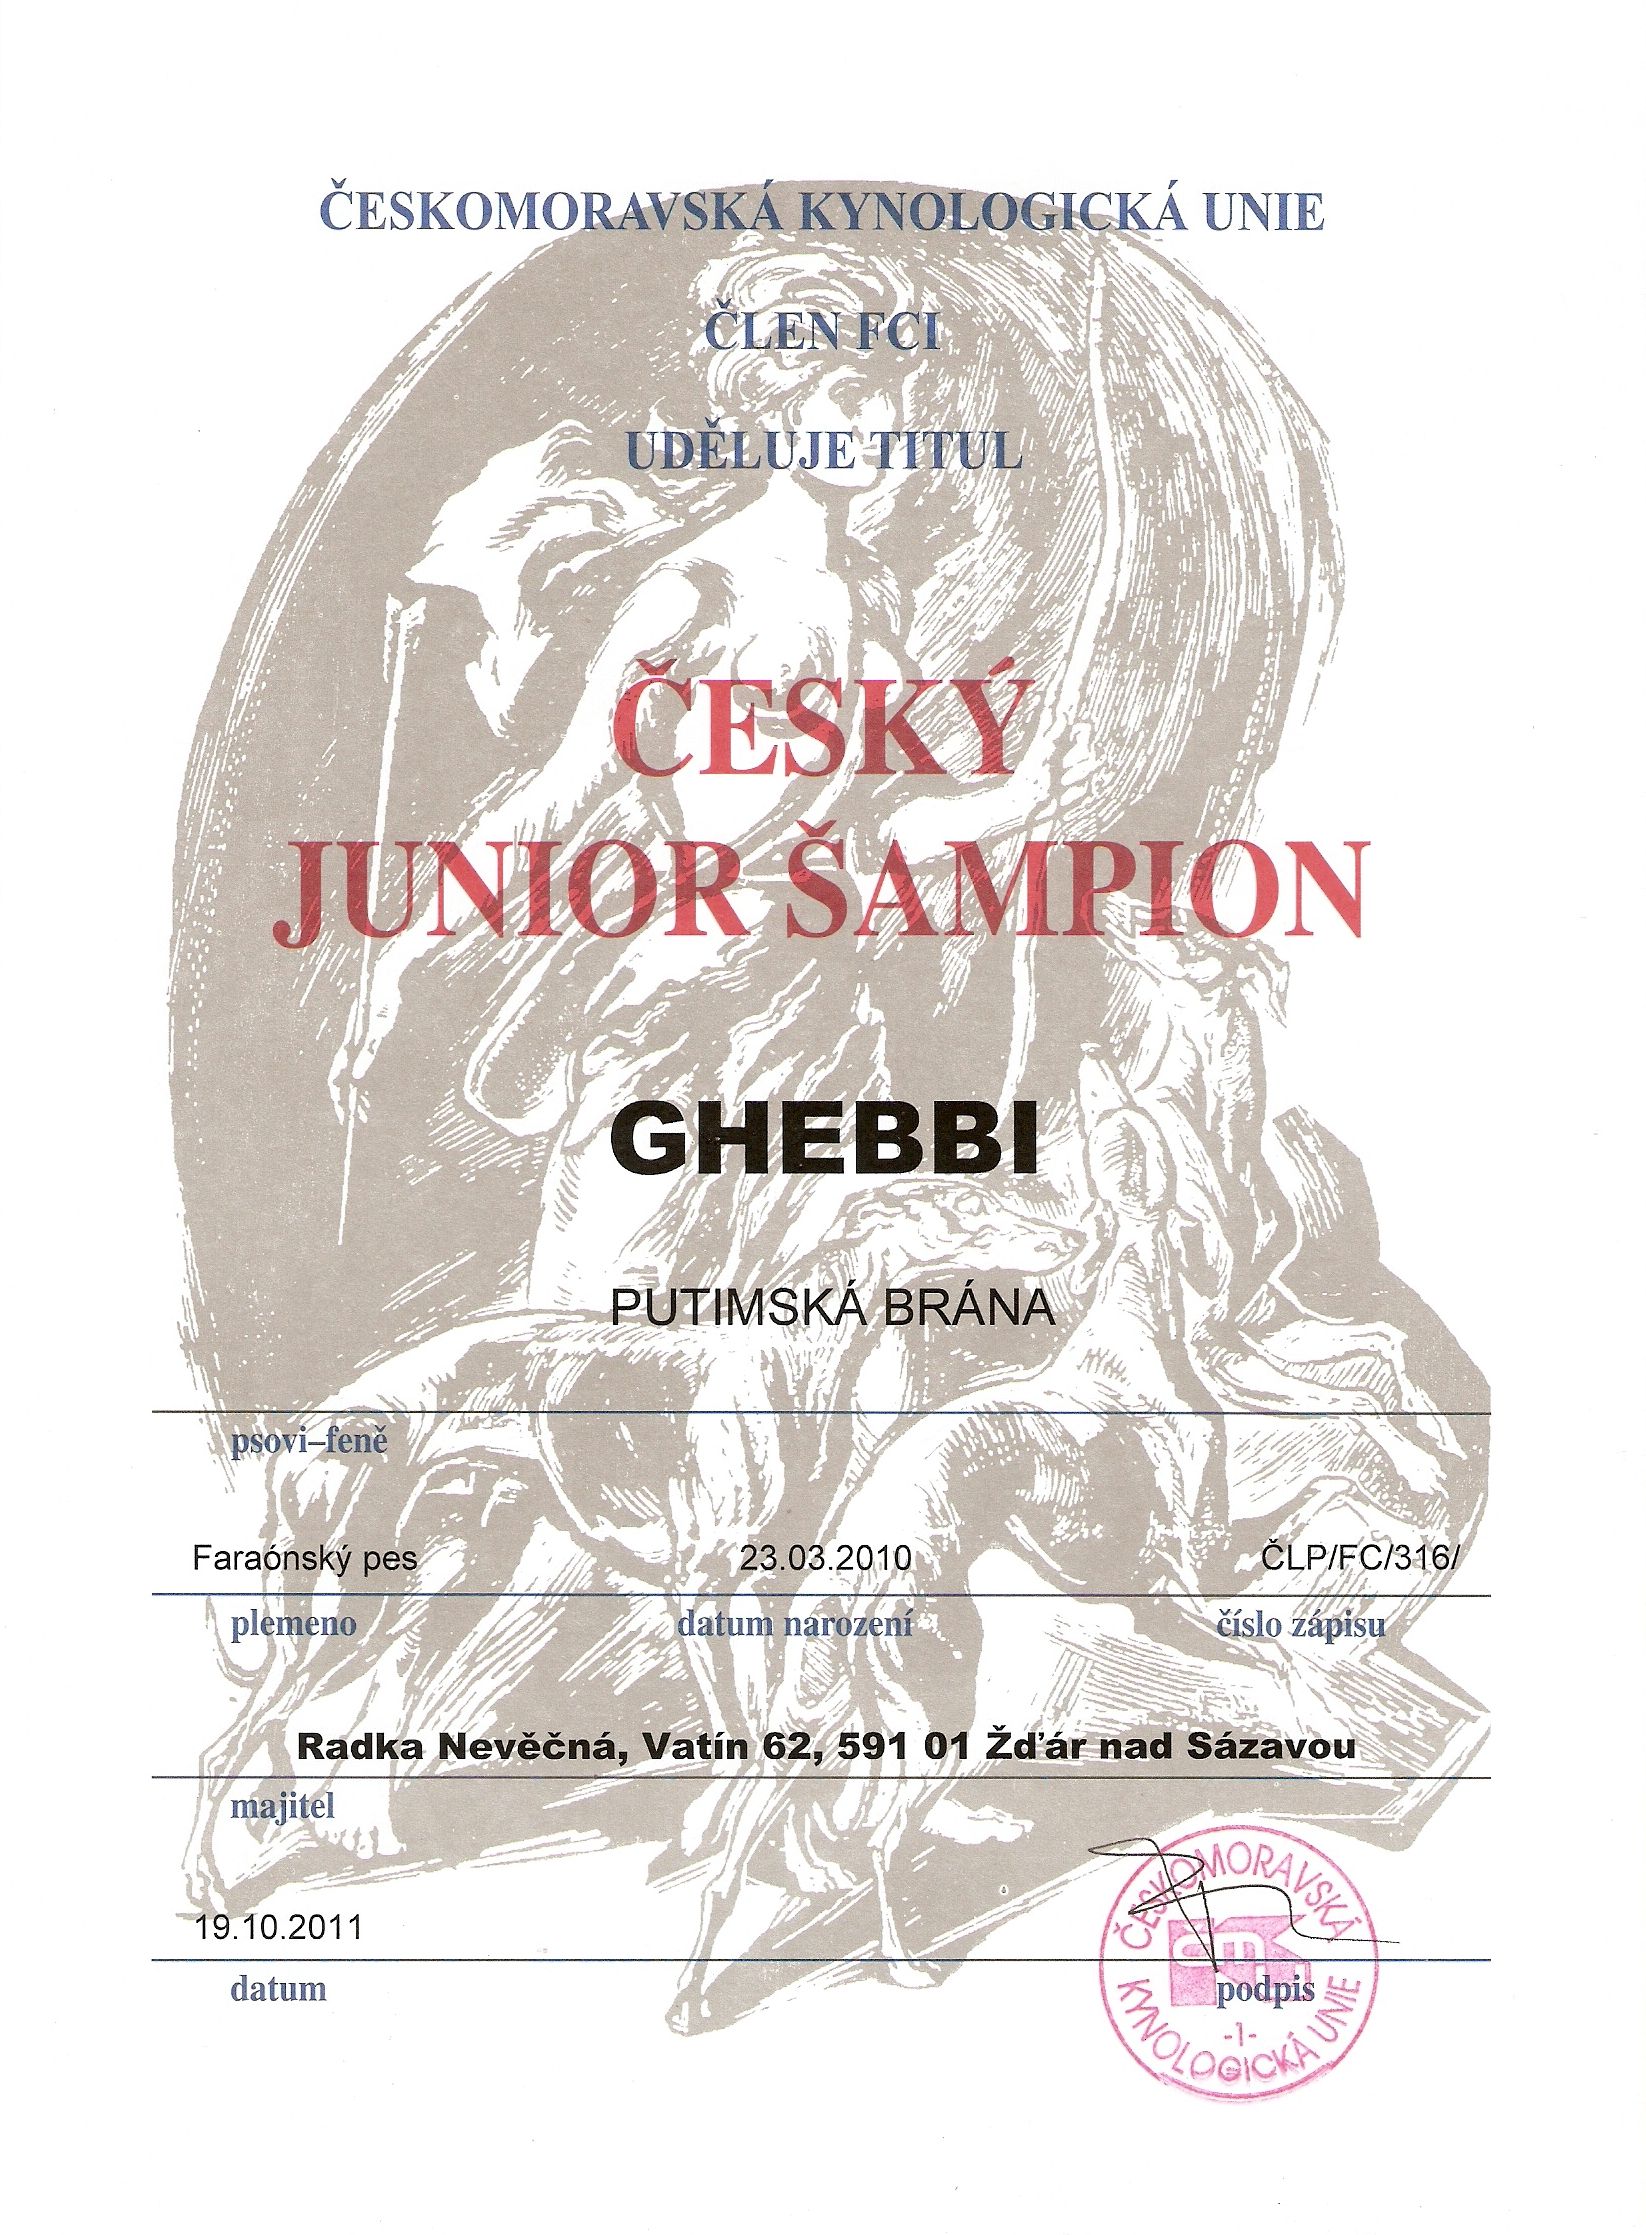 Ghebbi Putimská brána - Český junior šampion